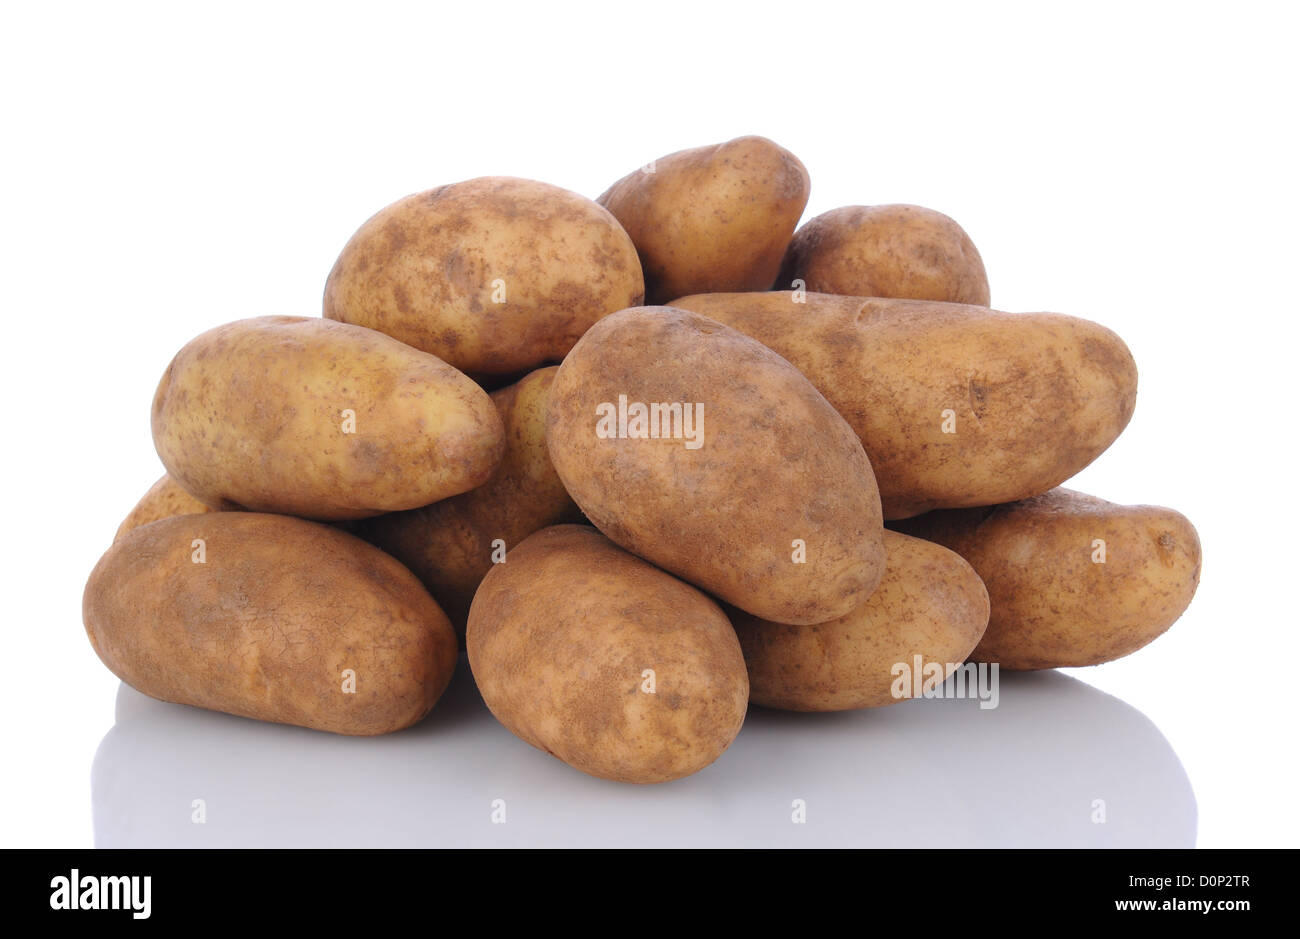 Libre d'un tas de pommes de terre russet sur une surface blanche avec réflexion. Format horizontal. Banque D'Images